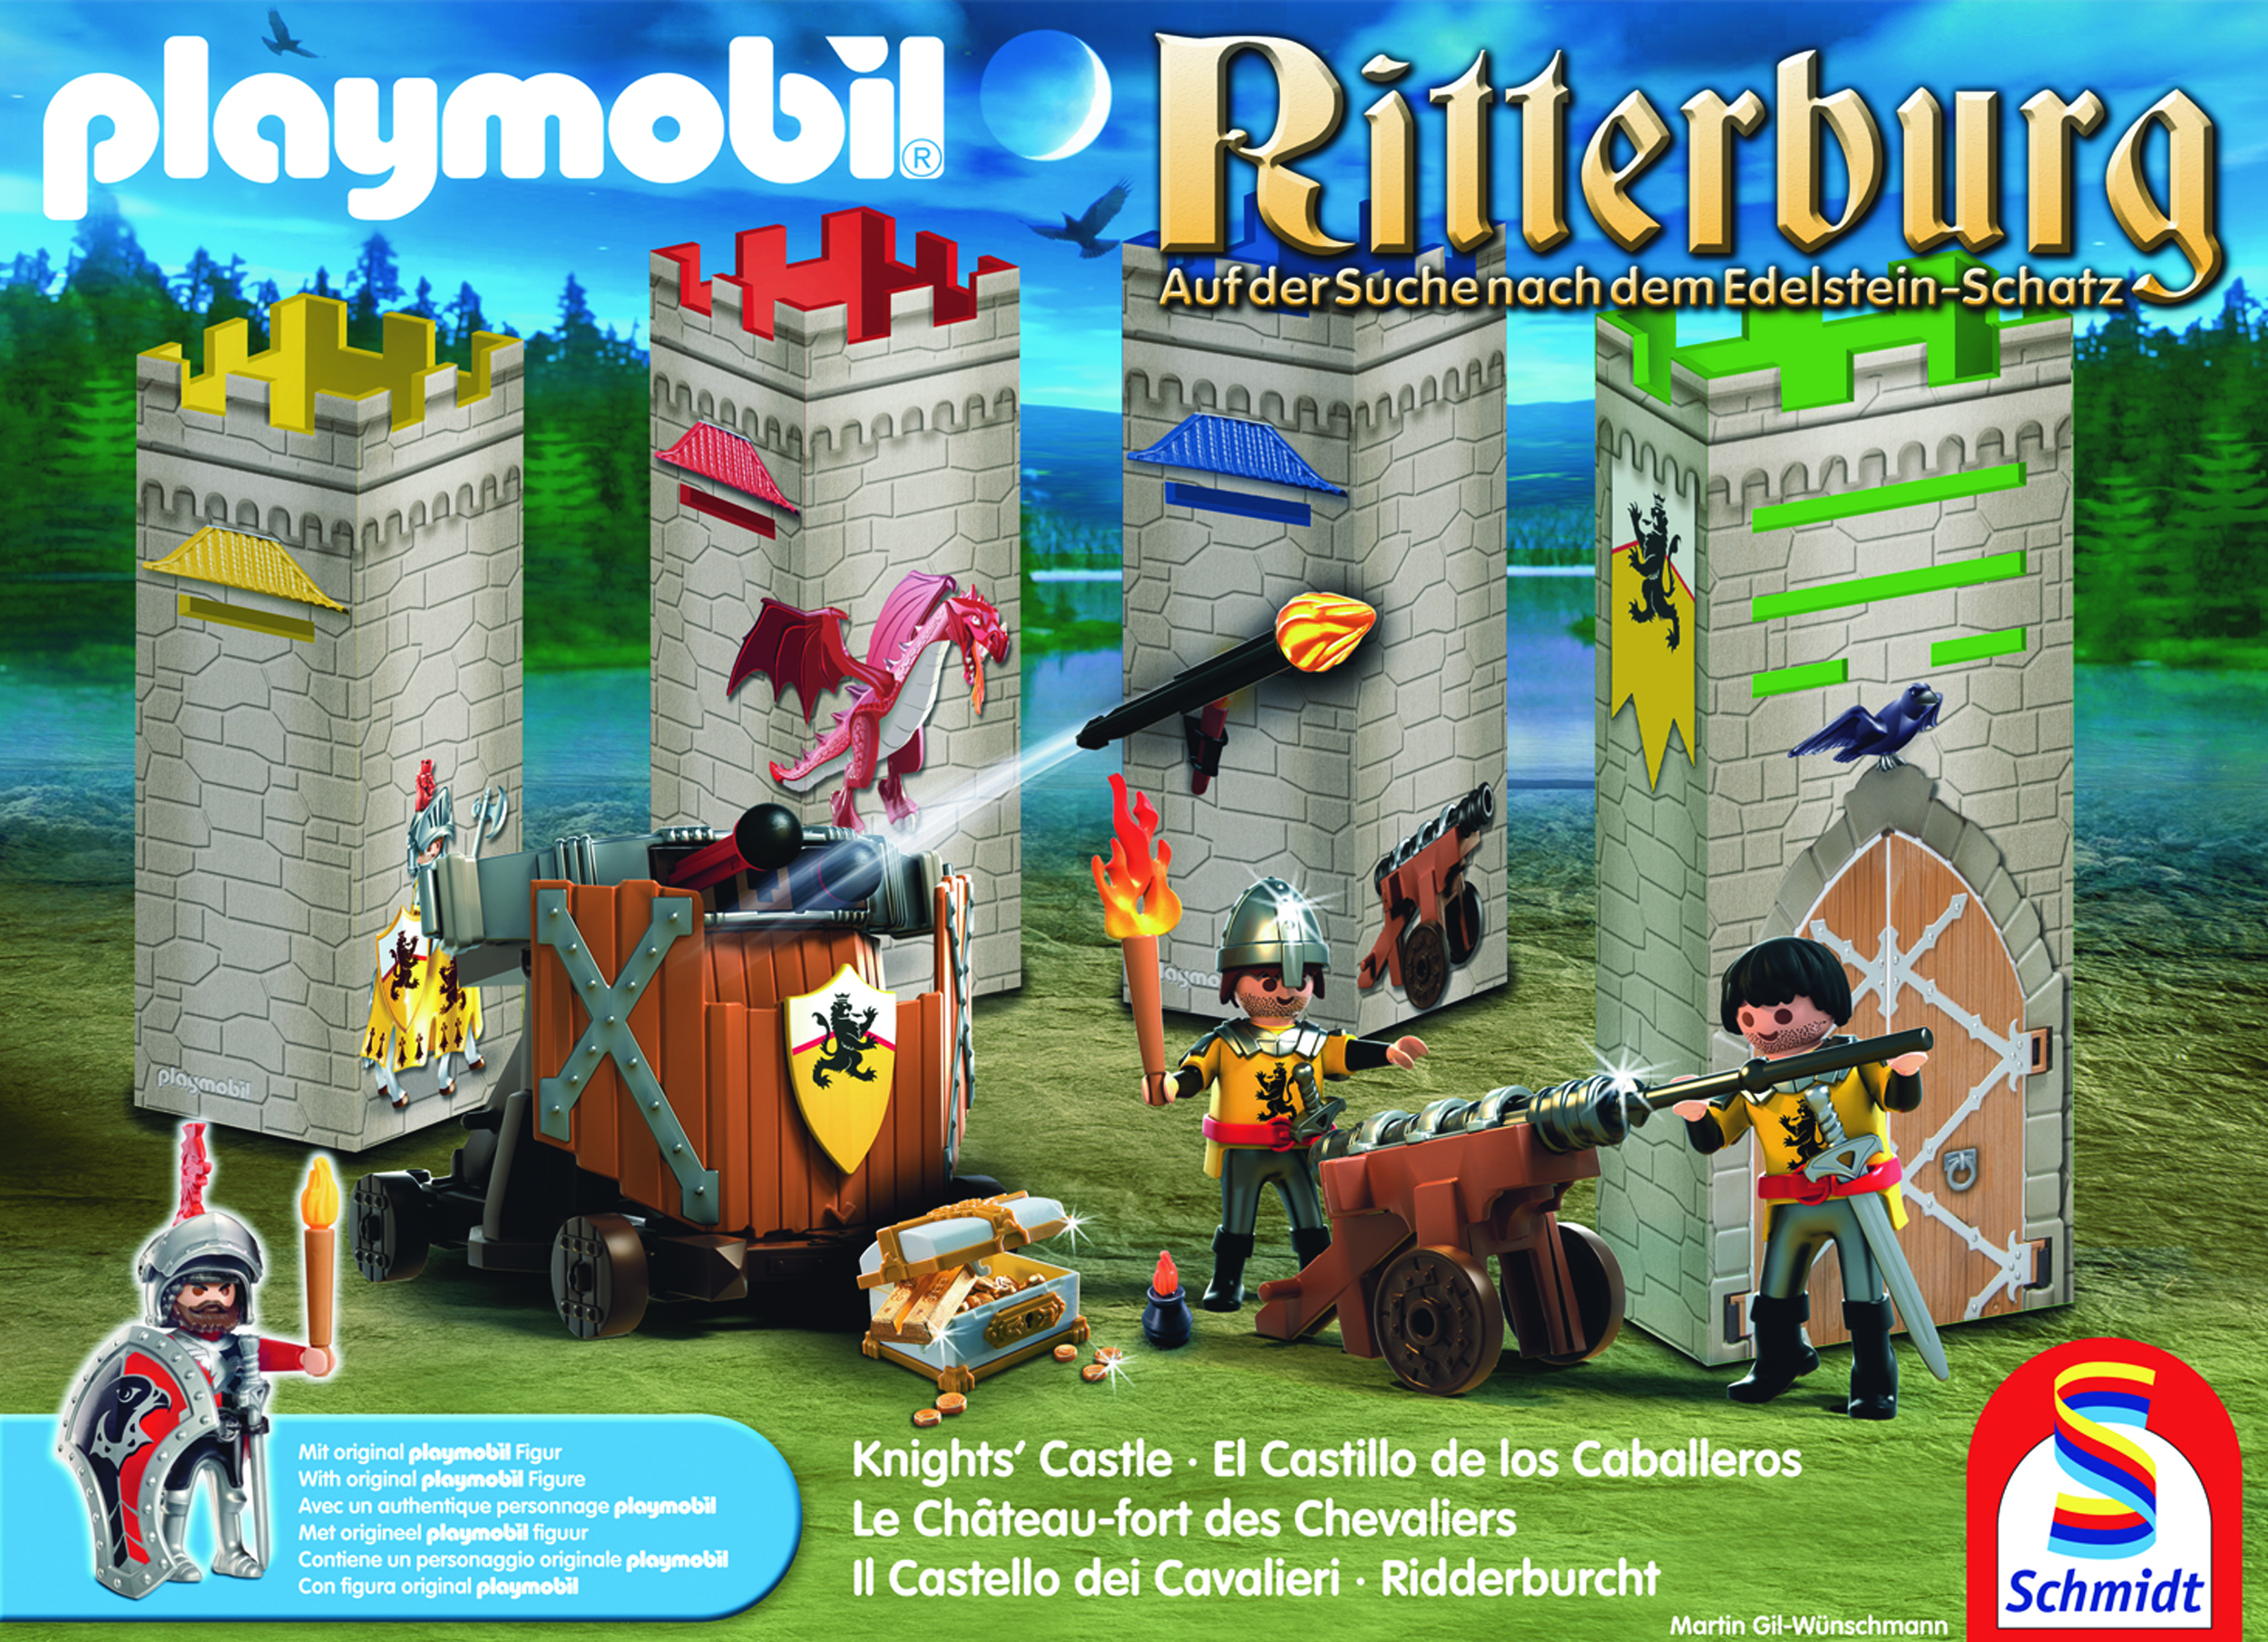 Schmidt Spiele Playmobil Ritterburg Auf der Suche nach dem Edelsteinschatz 